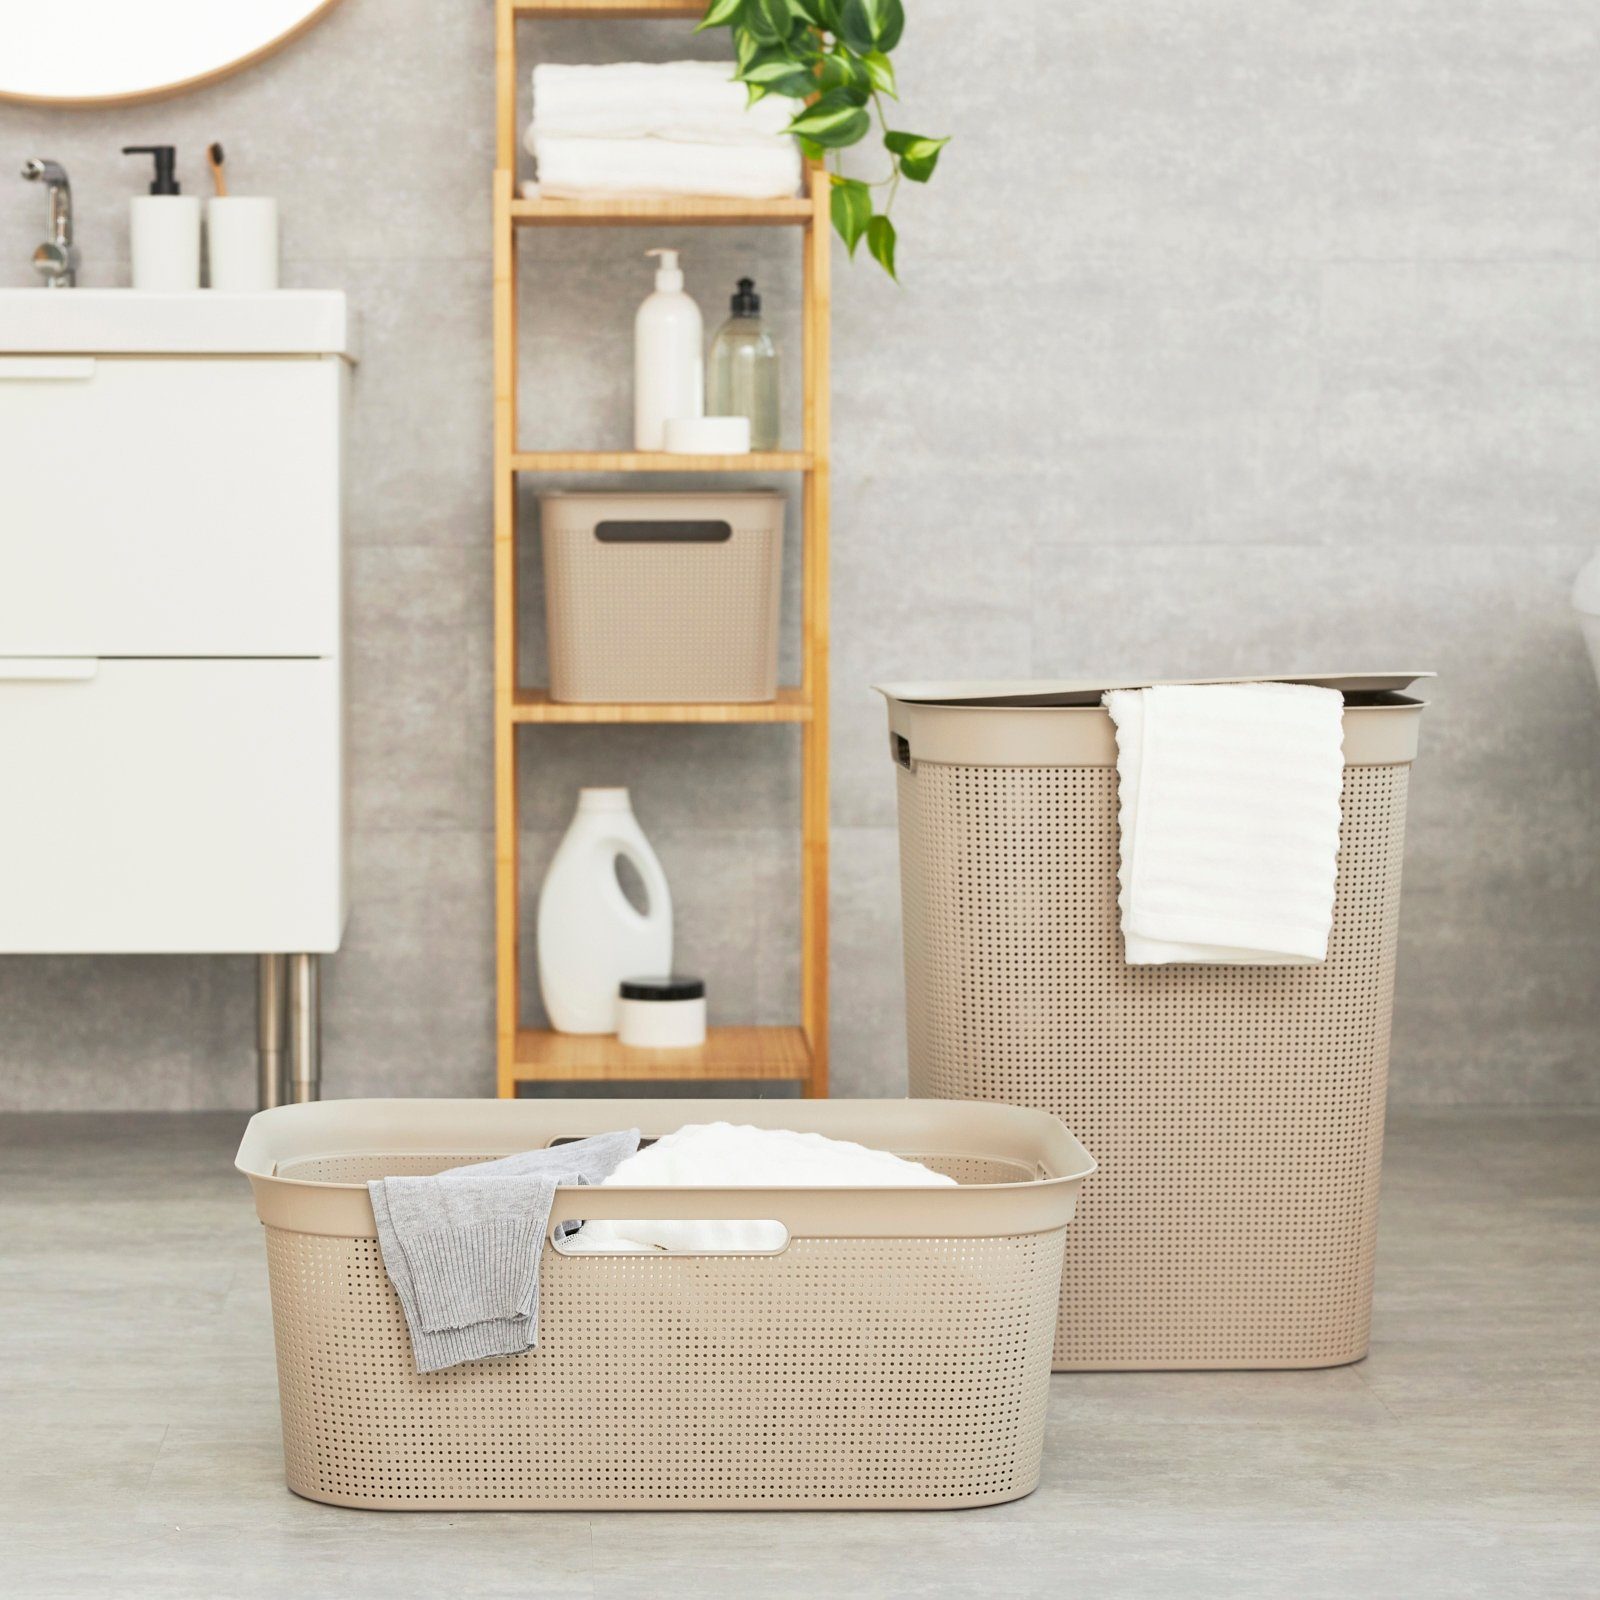 Rotho an Luftzirkulation ermöglicht ROTHO innerhalb Seiten Set Brisen Löcher Wäschebox der Wäsche, den Cappuccino Wäschekorb